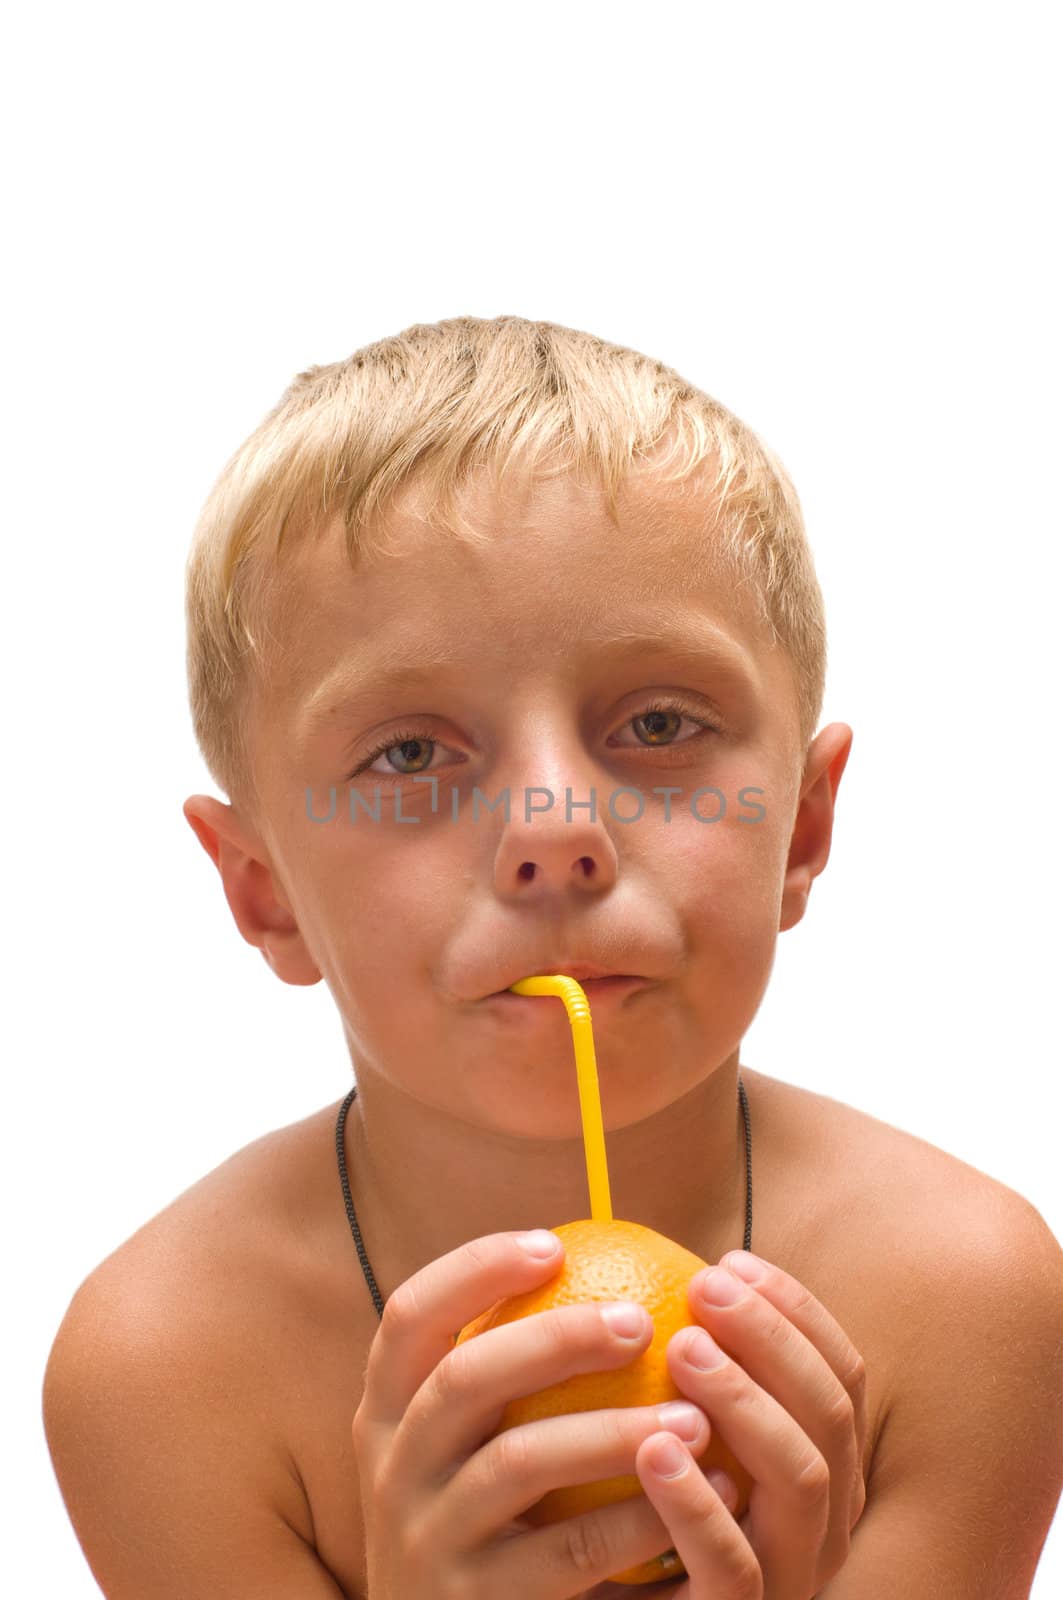 Child with an orange. by kromeshnik